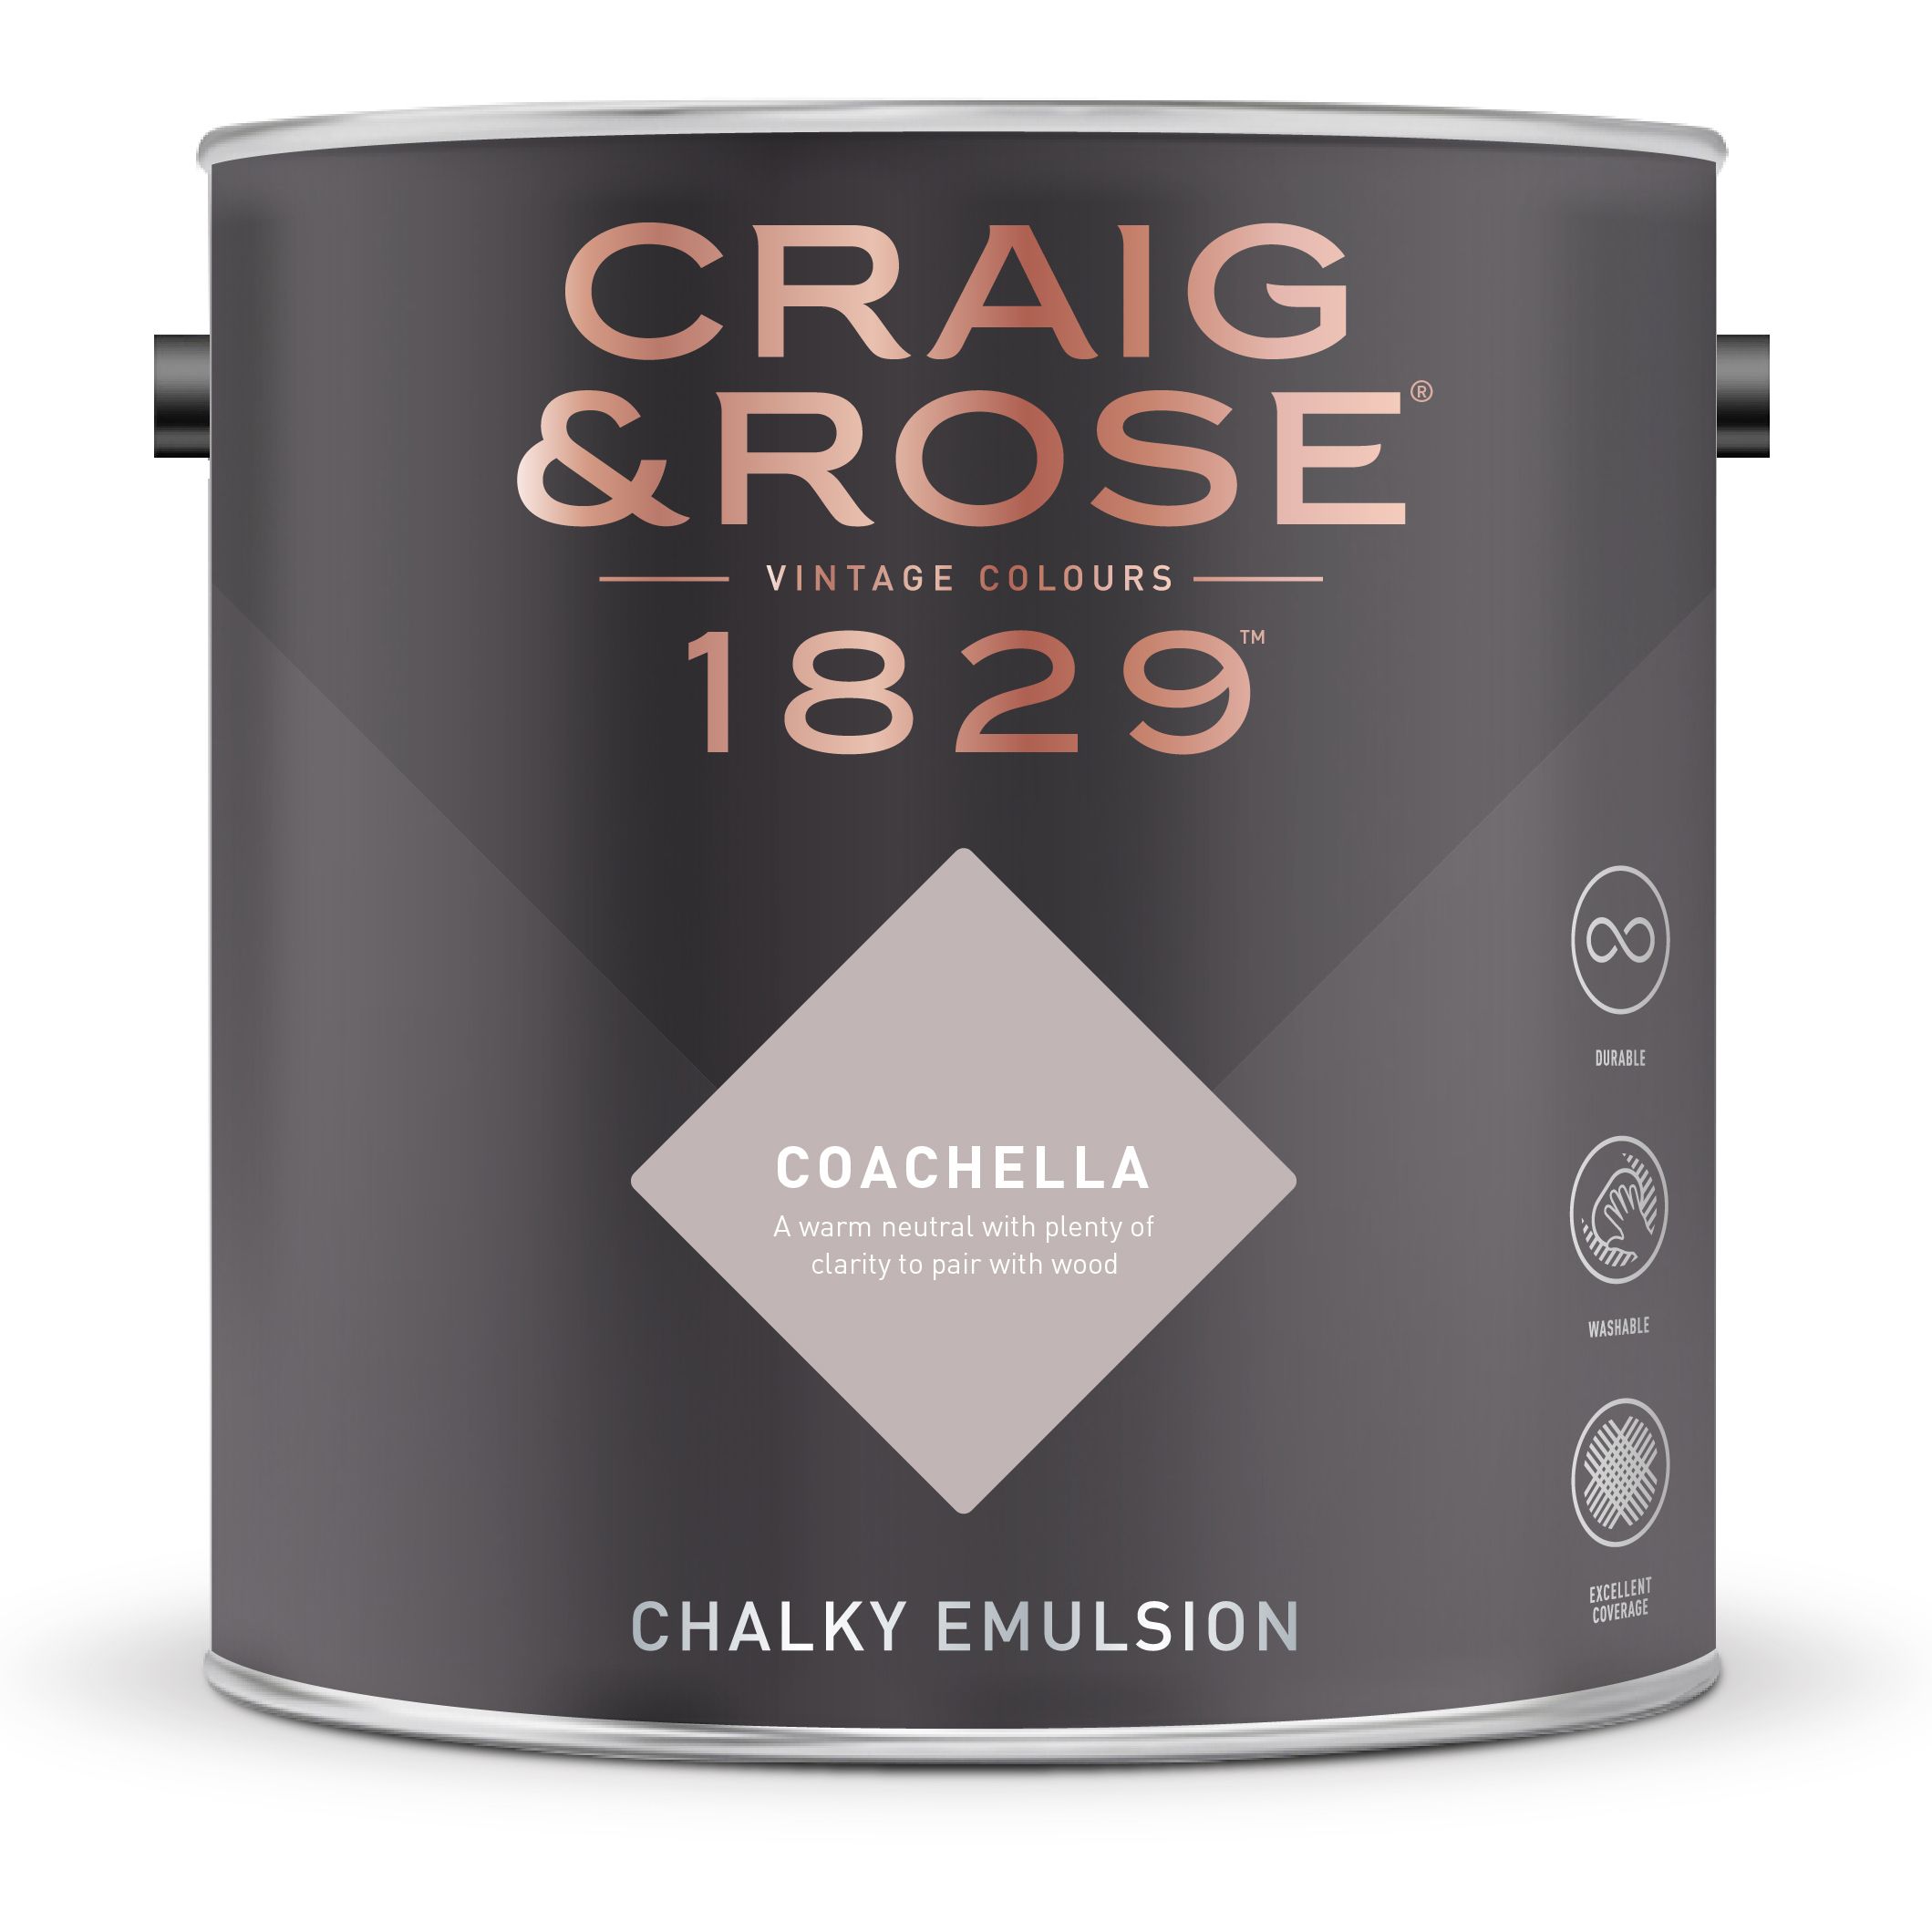 Craig & Rose 1829 Coachella Chalky Emulsion paint, 2.5L